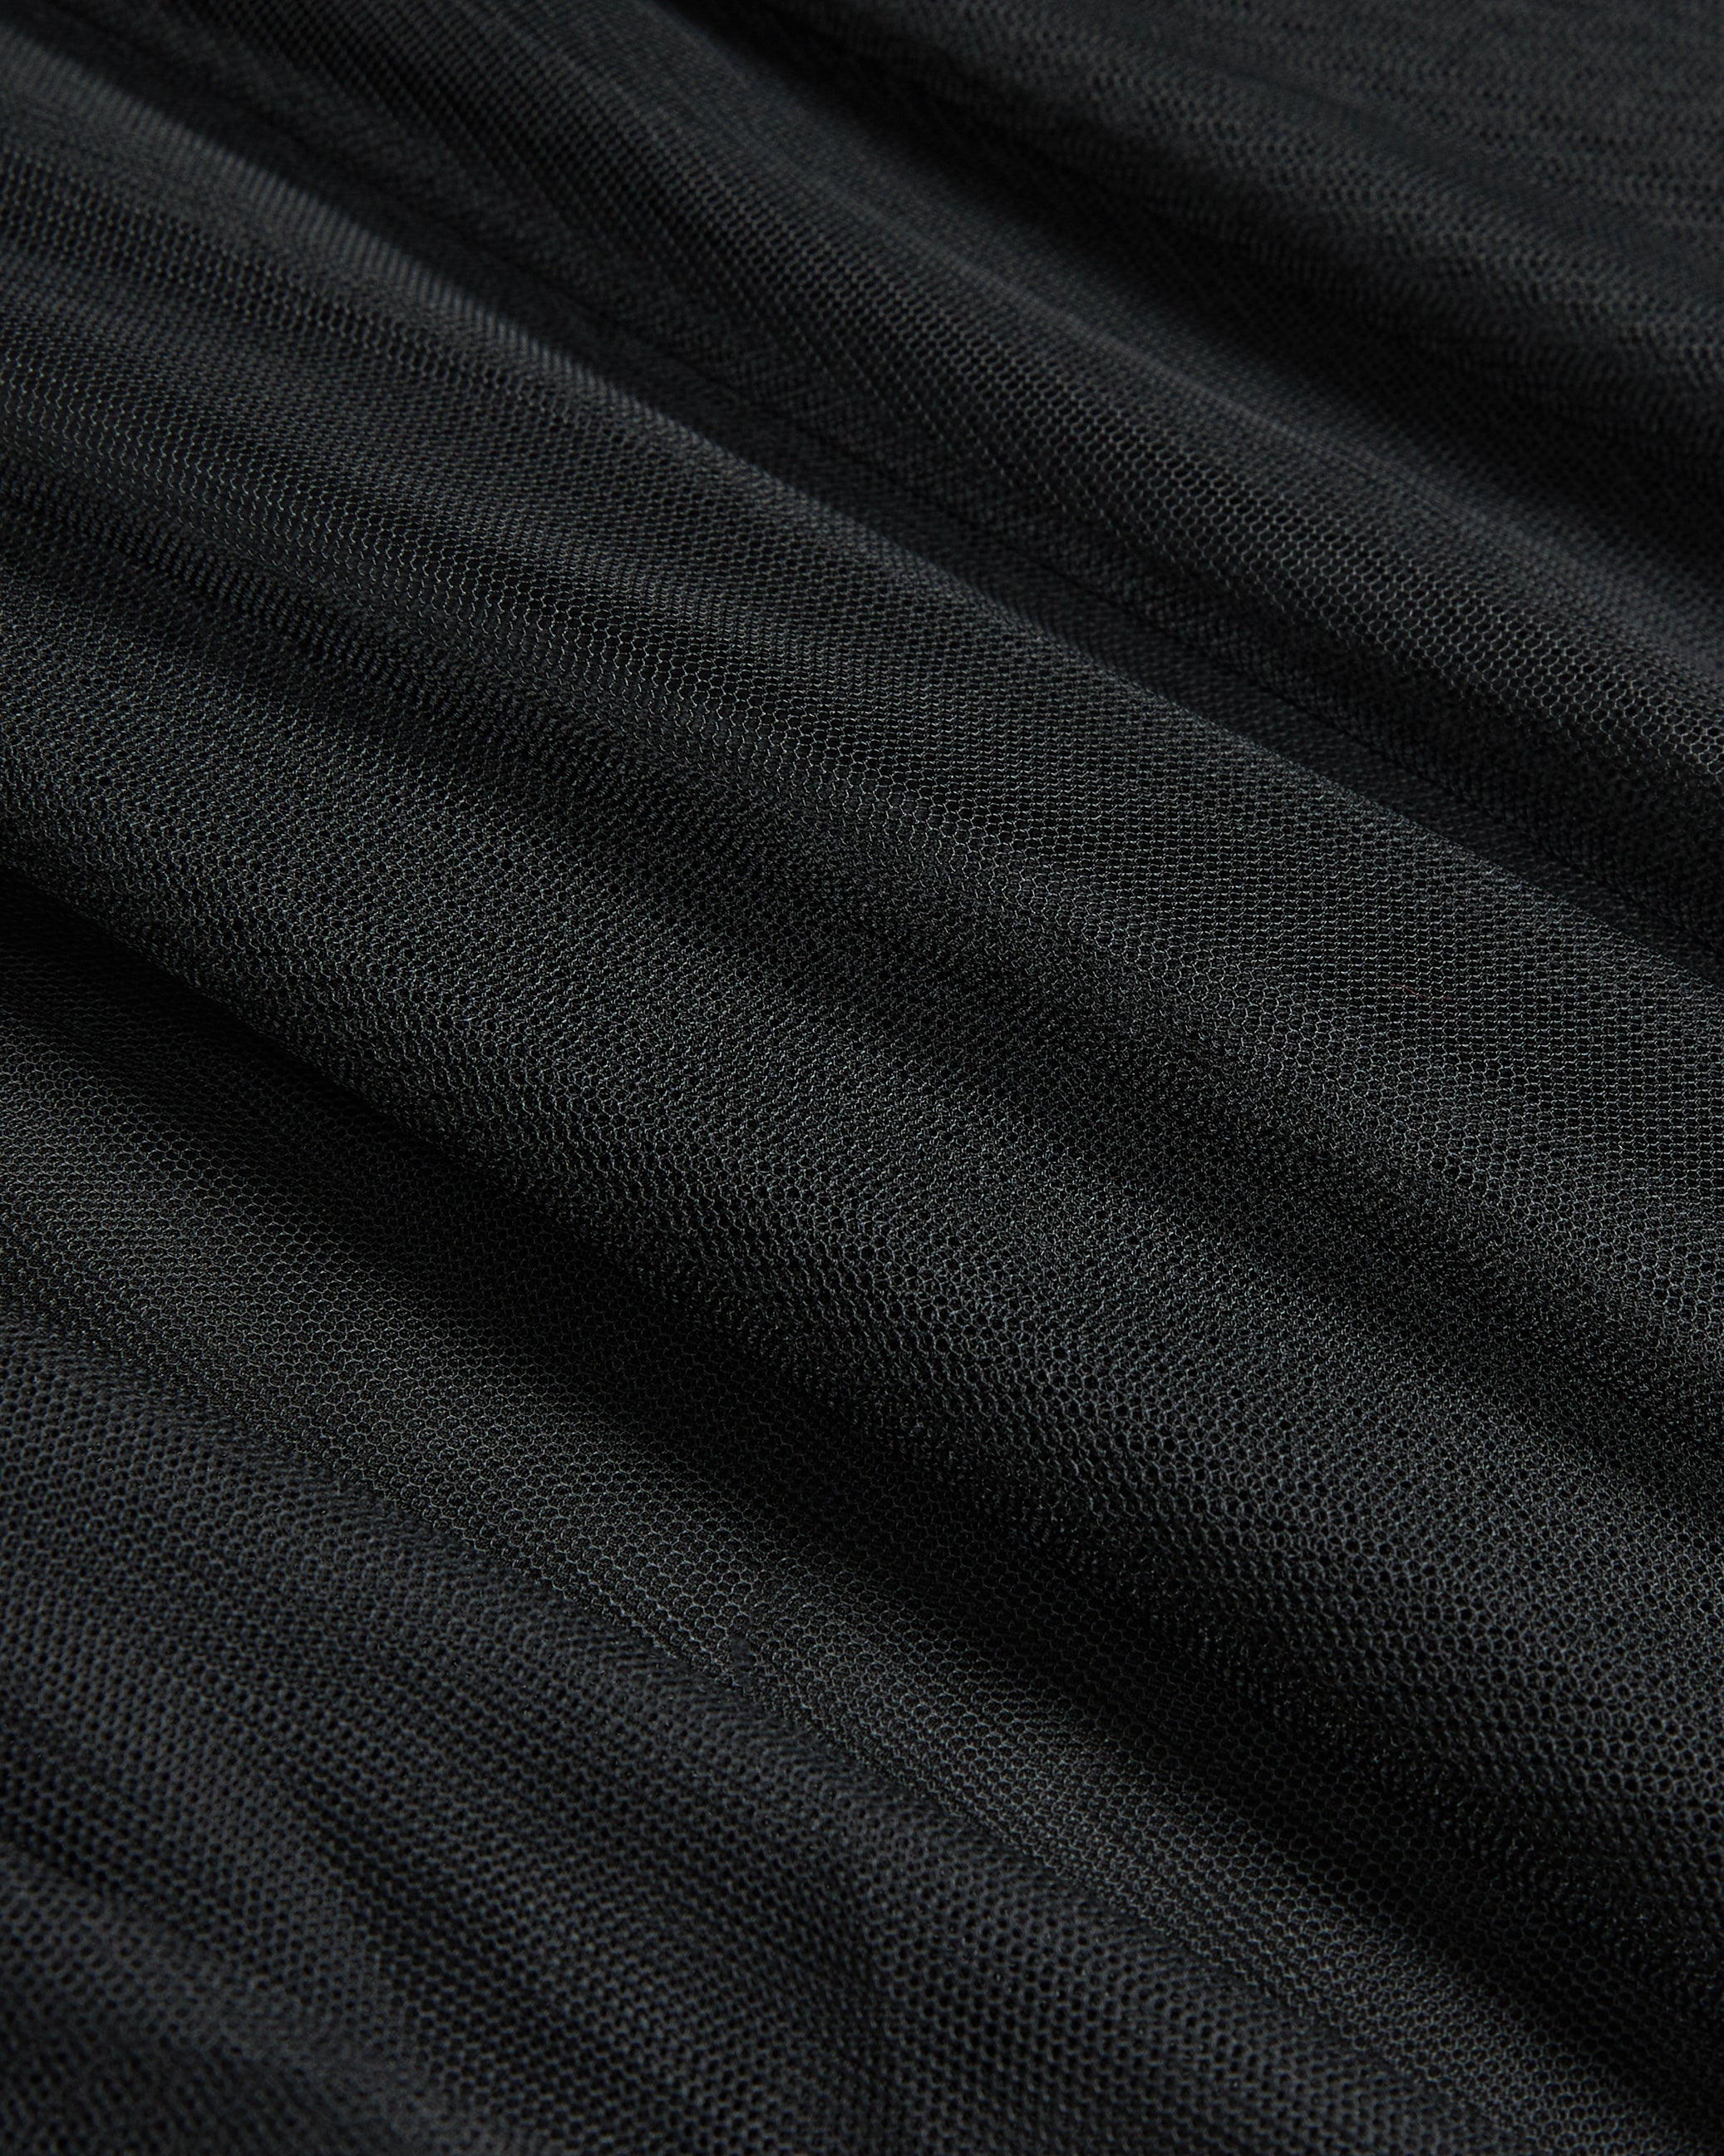 Akarii Midi Length Skirt With Insert Black